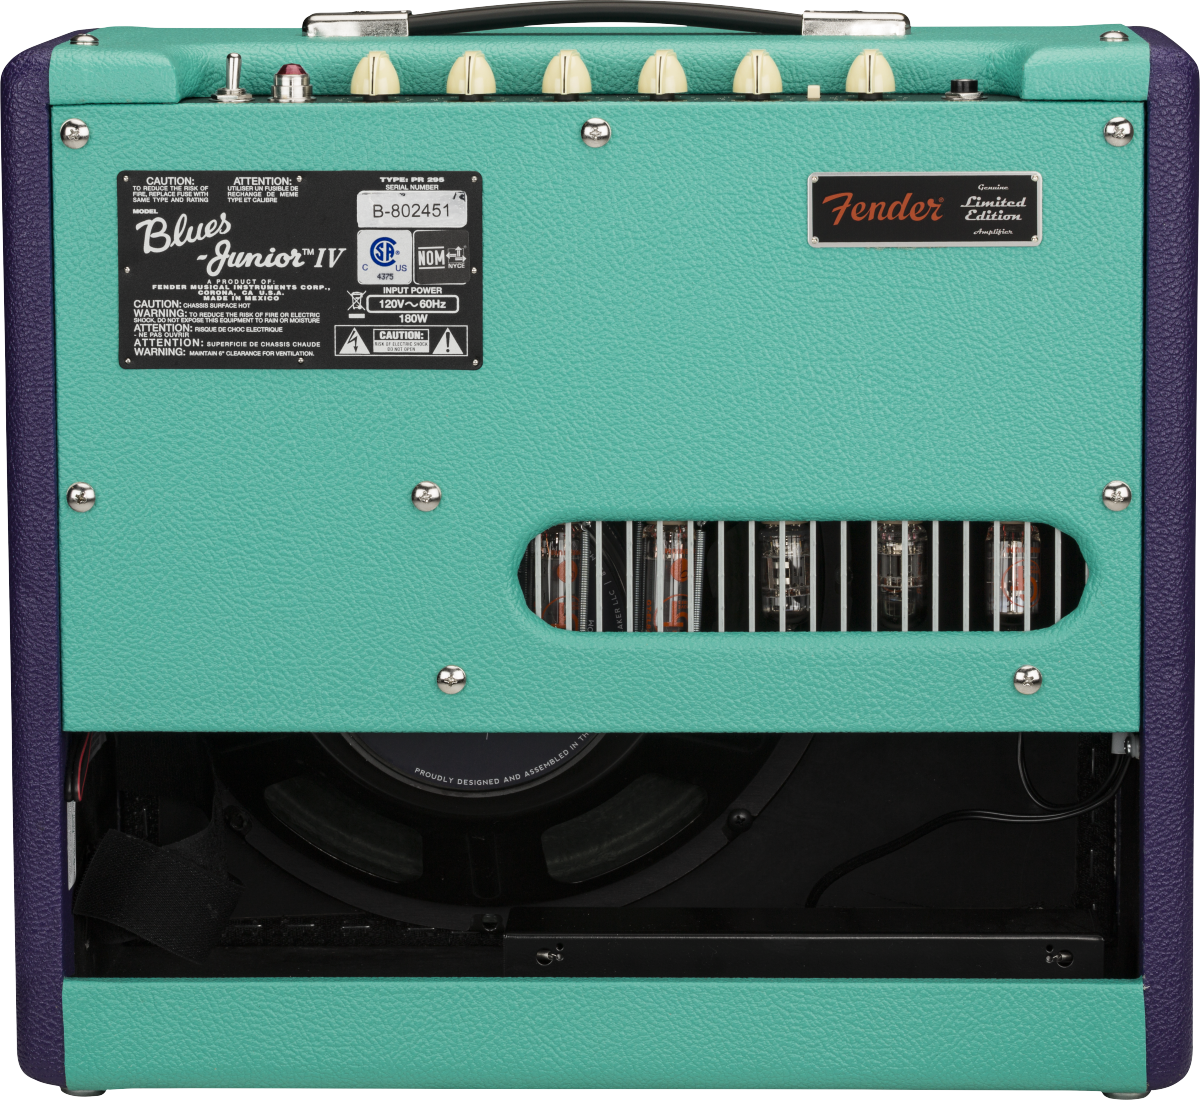 Fender Blues Junior Iv Fsr Ltd 15w 1x12 Jensen Cannabis Rex Purple Seafoam - Ampli Guitare Électrique Combo - Variation 1